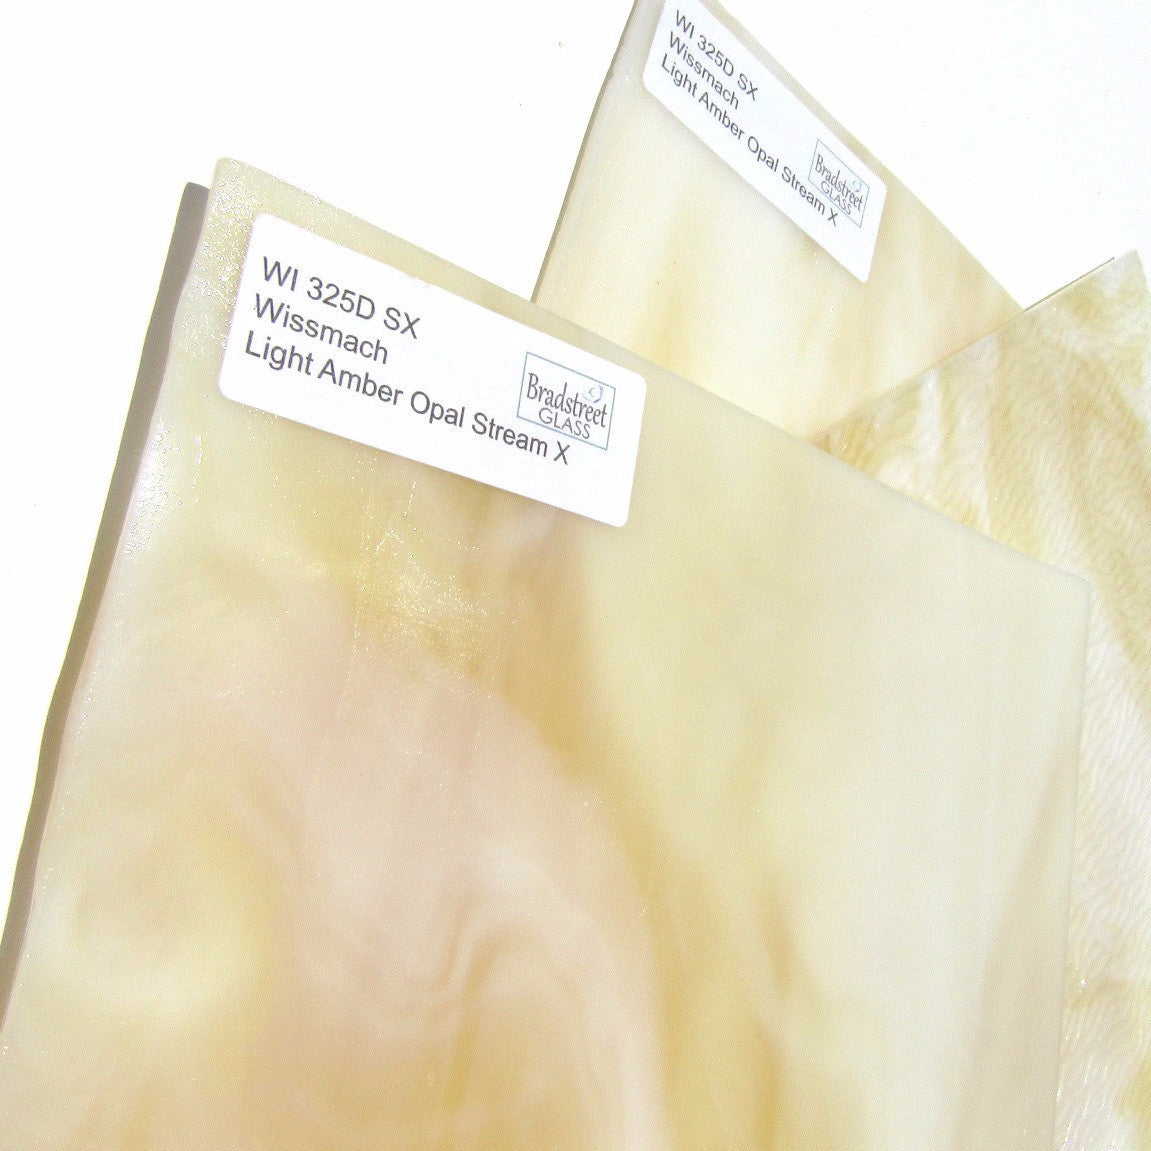 Wissmach Light Amber Opal Stream X Stained Glass Sheet WI 325D SX